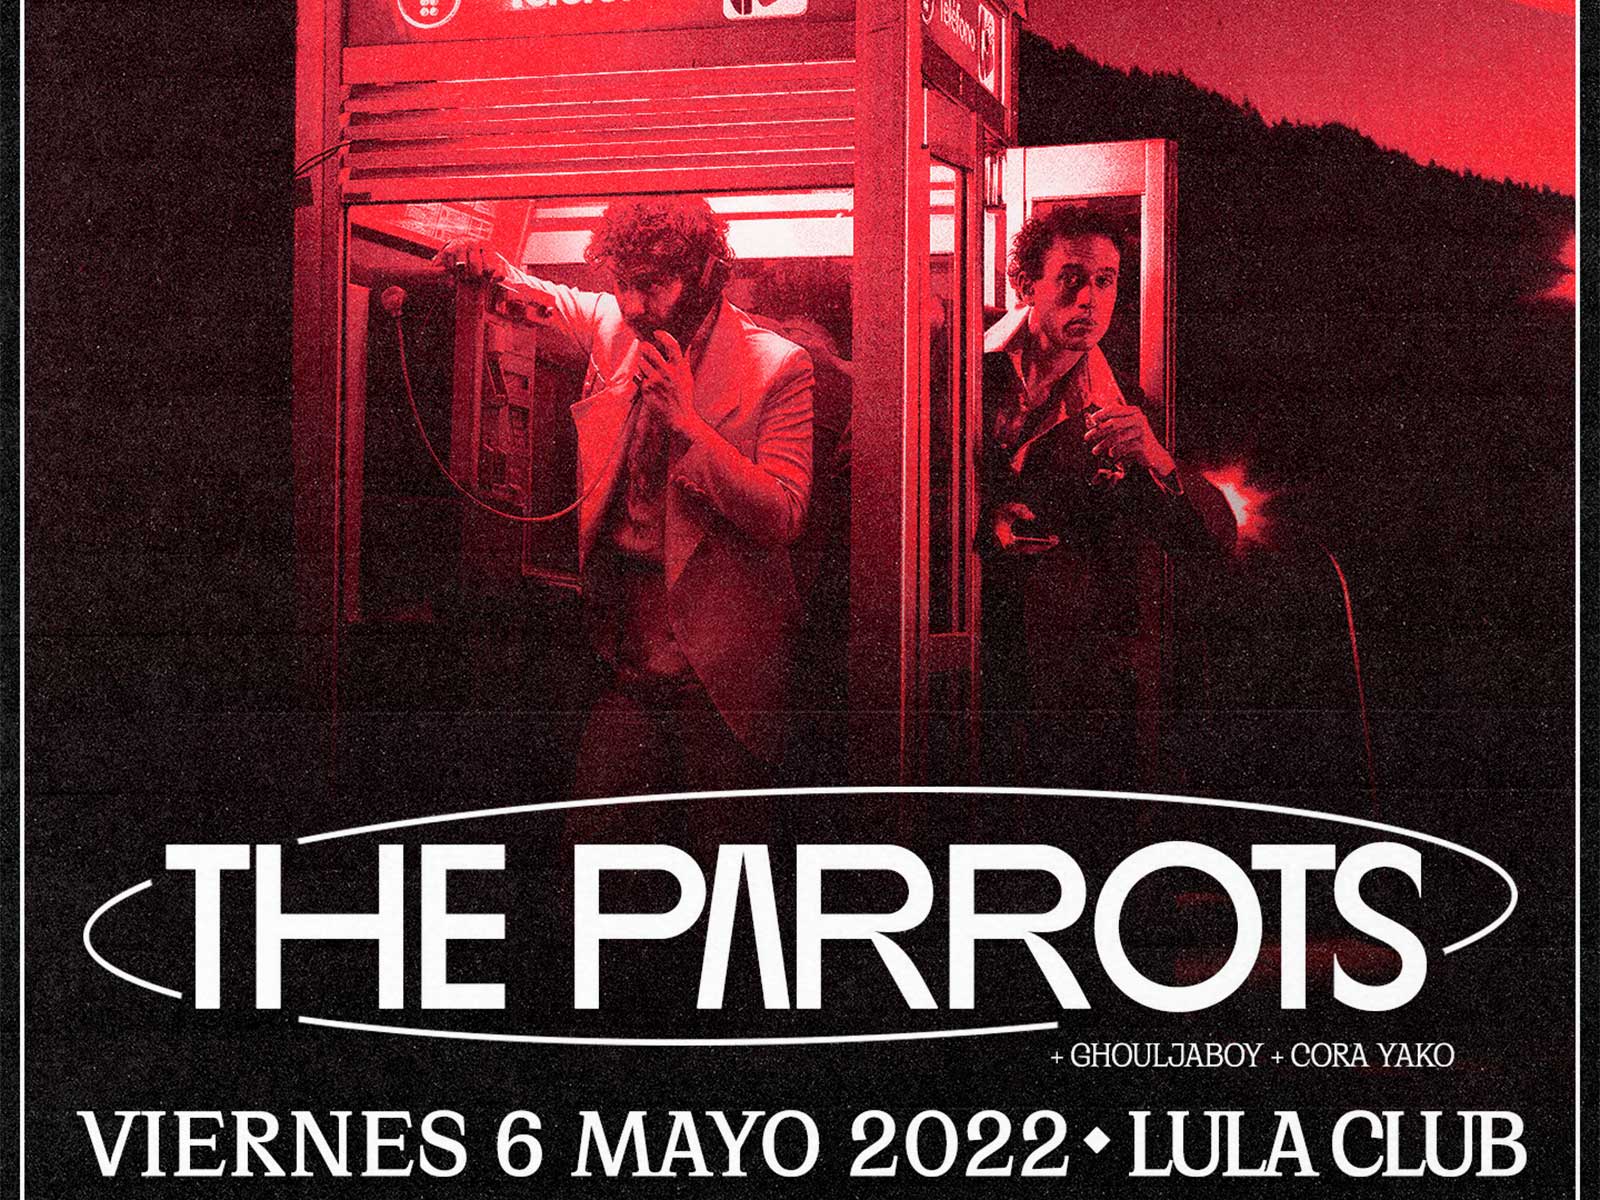 THE PARROTS presentan su nuevo álbum en Jaguar Club Madrid